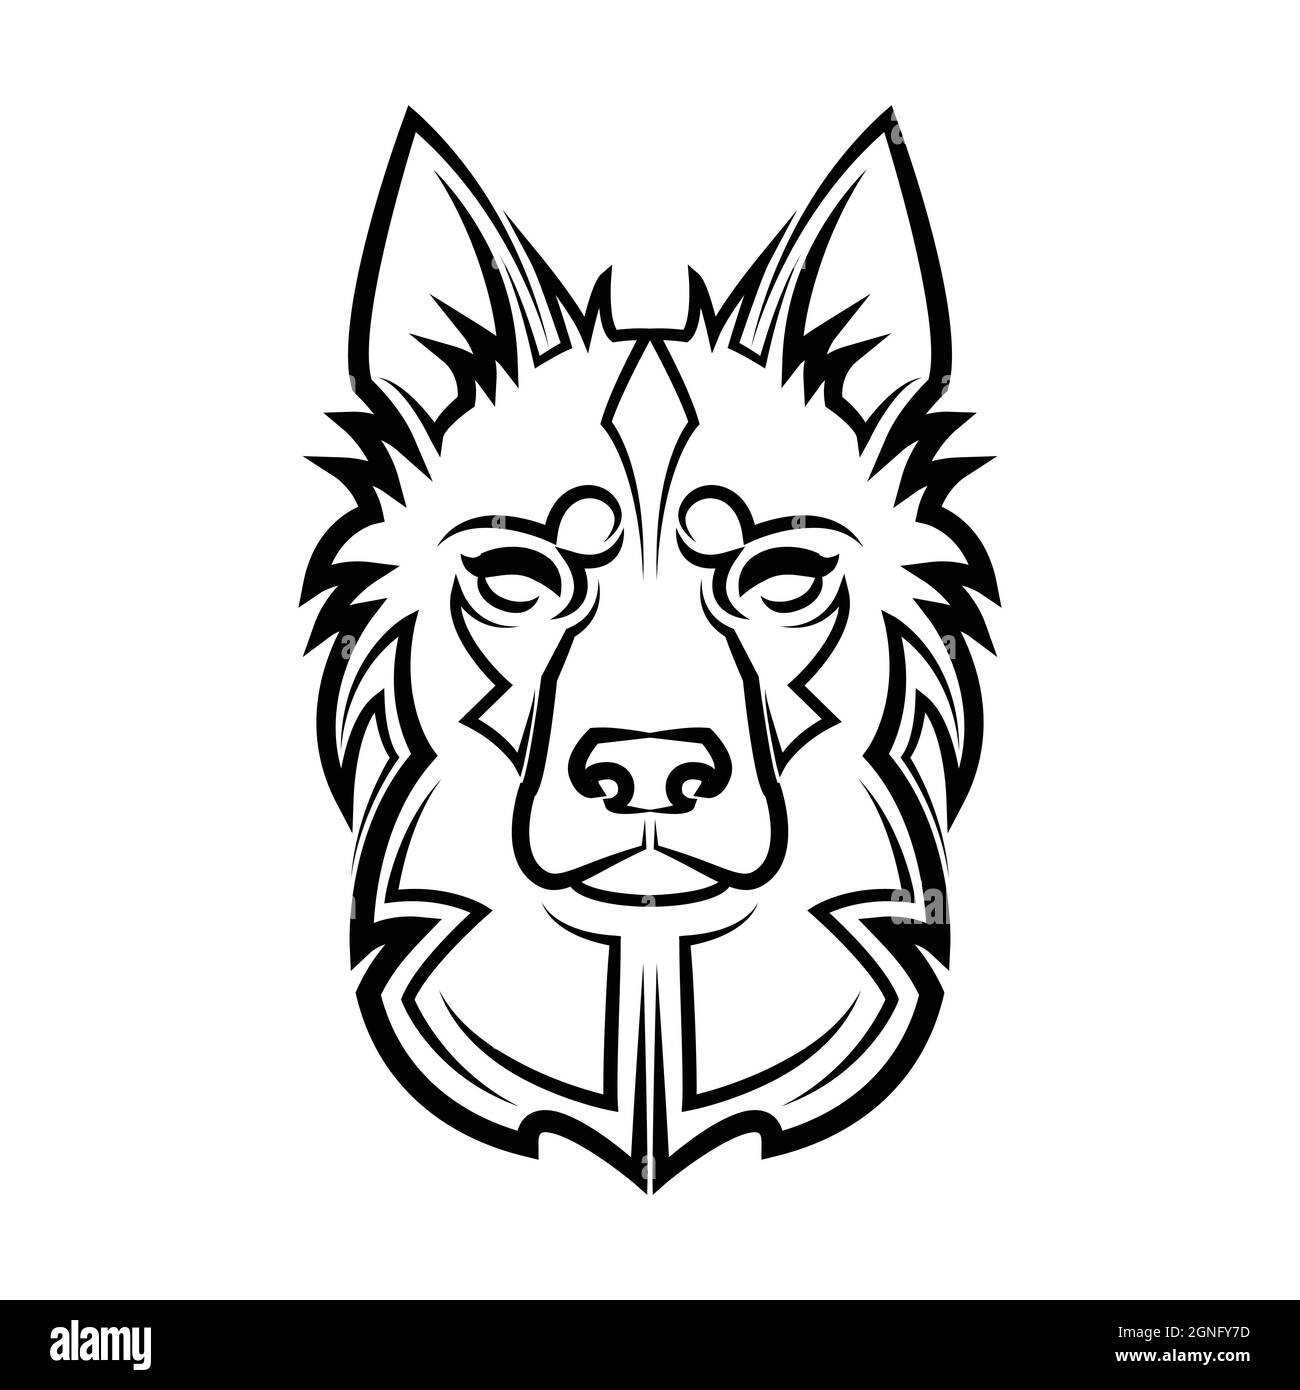 Schwarz-weiße Linienkunst des deutschen Schäferhundes Kopf. Gute Verwendung für Symbol, Maskottchen, Symbol, Avatar, Tattoo, T-Shirt-Design, Logo oder ein beliebiges Design Stock Vektor